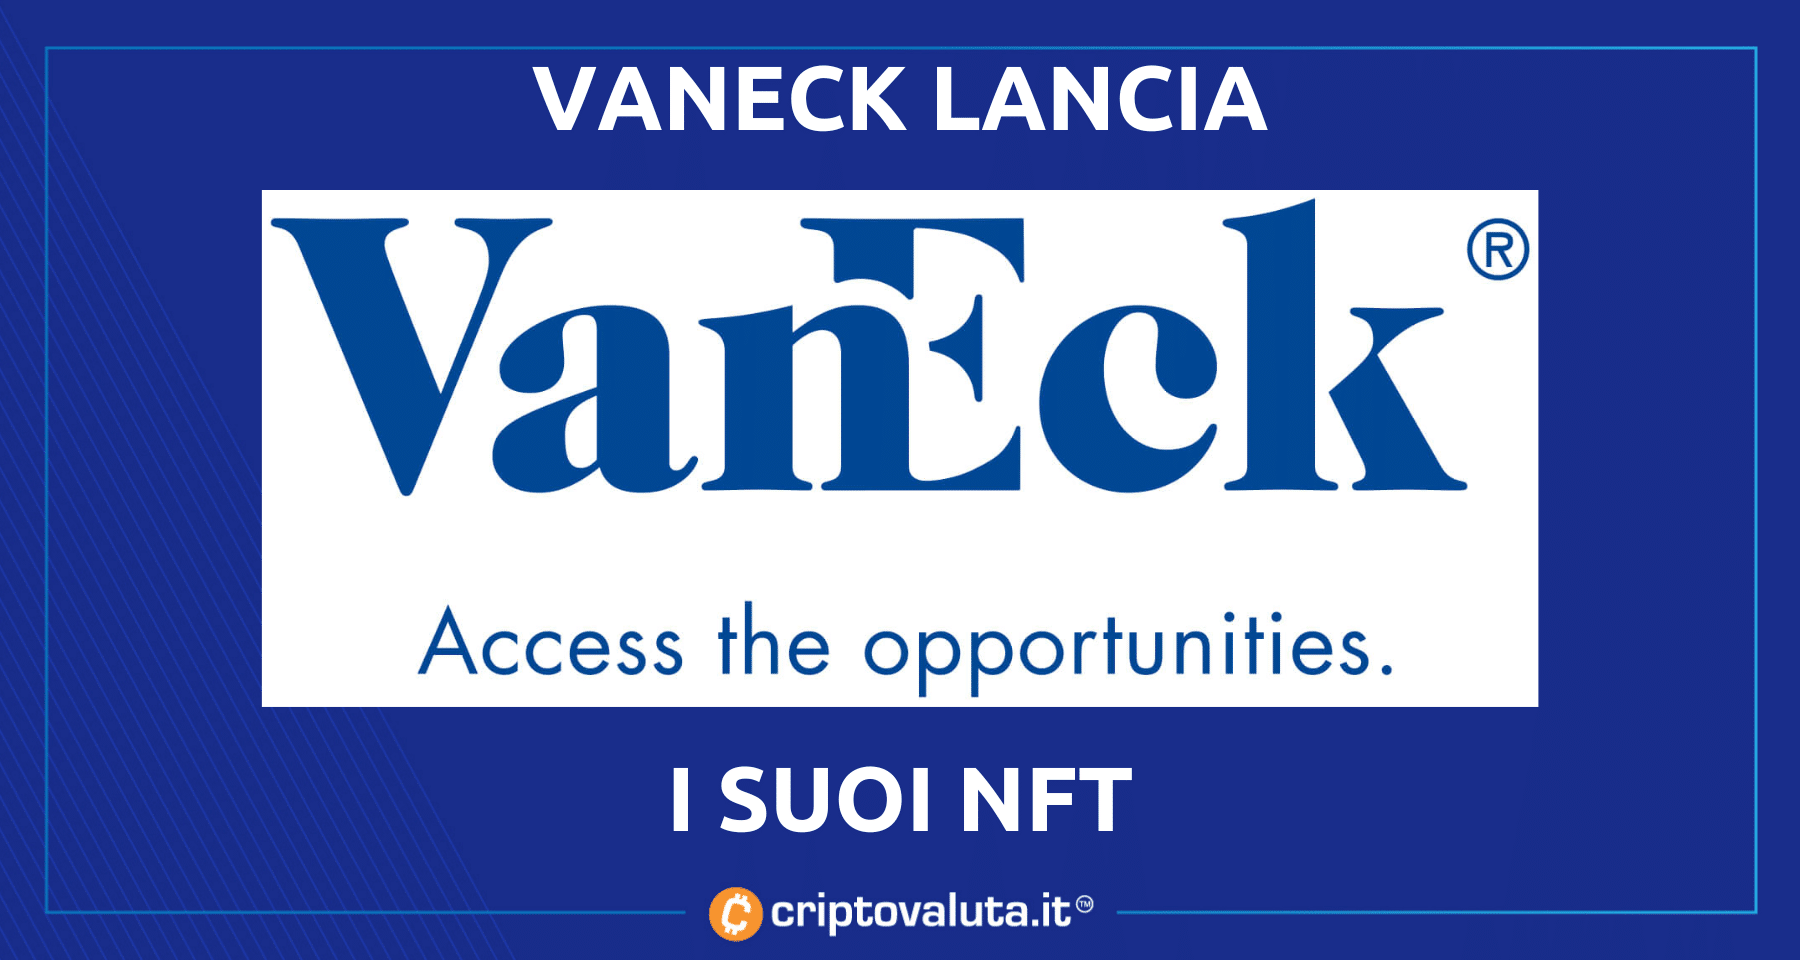 VanEck lancia la sua serie di NFT | Ecco i benefit per chi compra